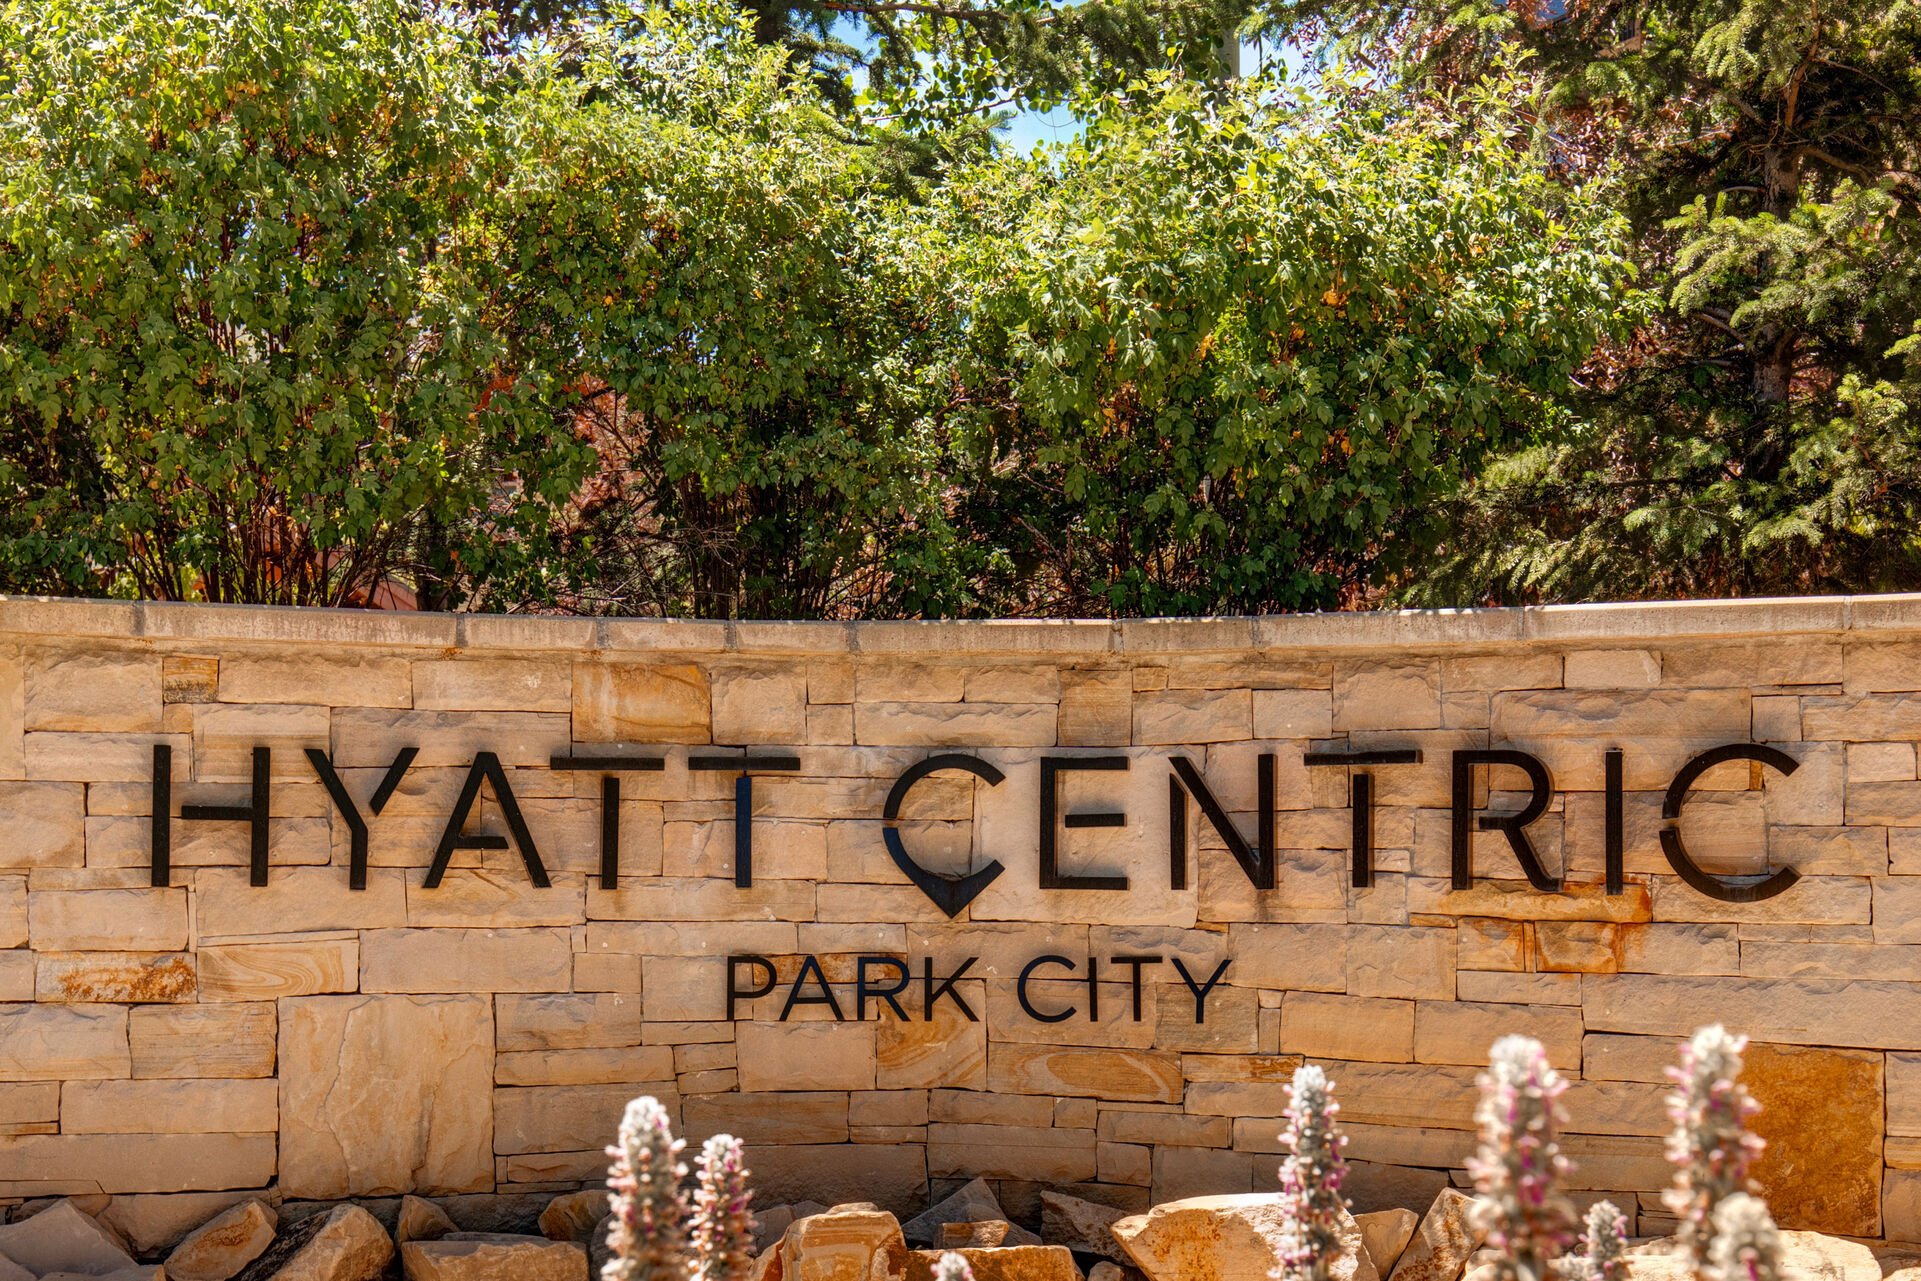 Condo located in the Hyatt Centric / Escala Lodge